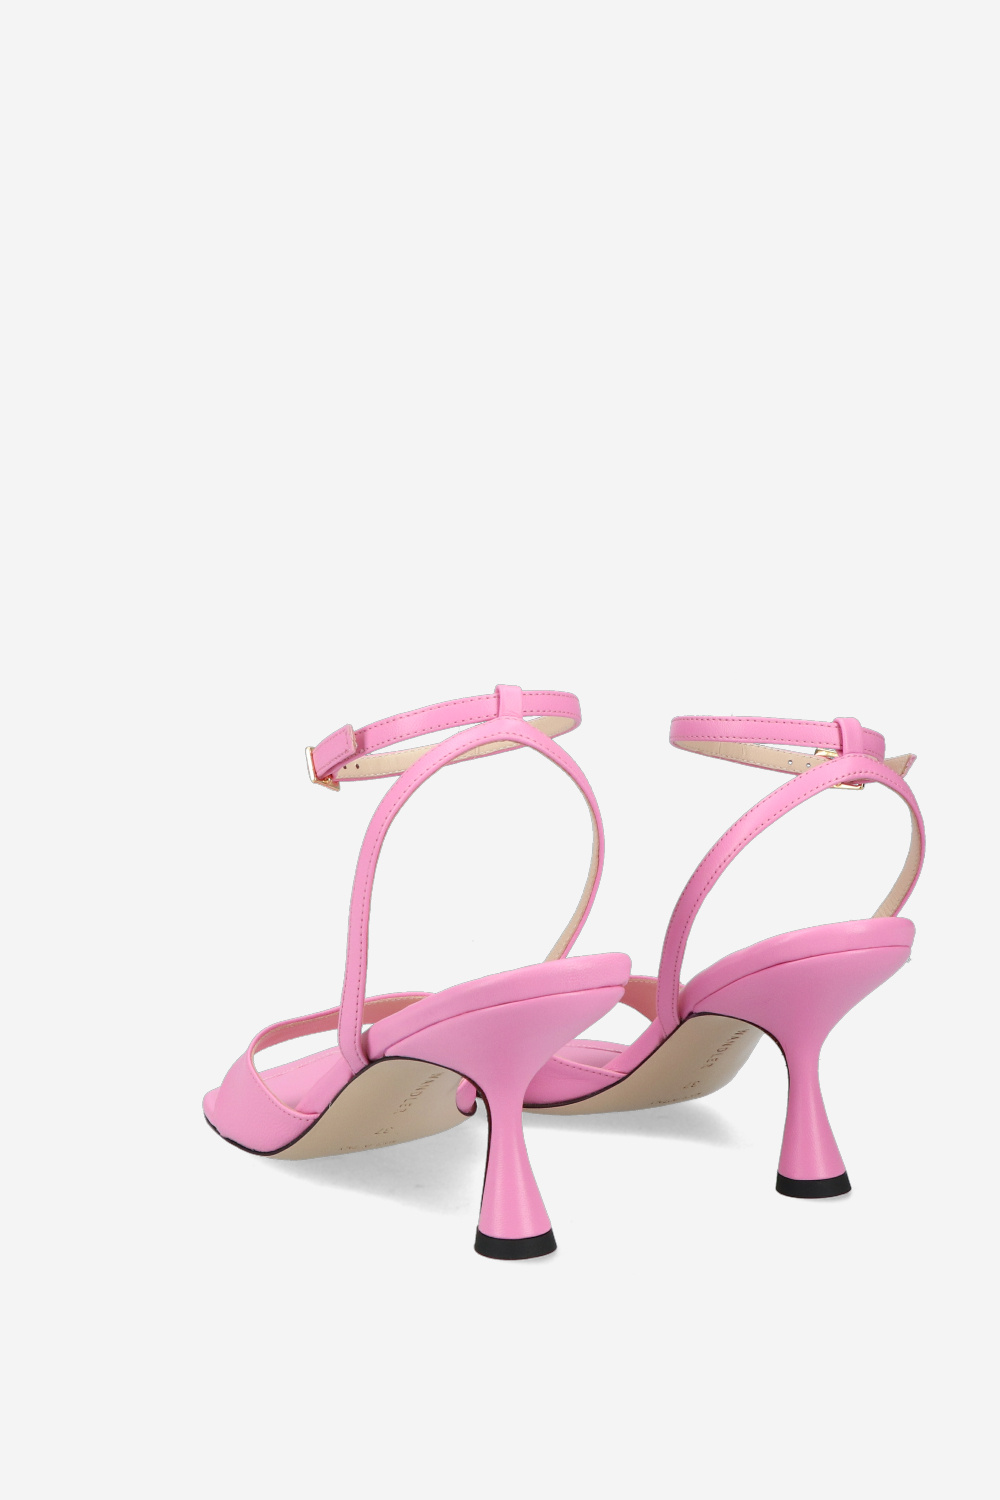 Wandler Sandals Pink